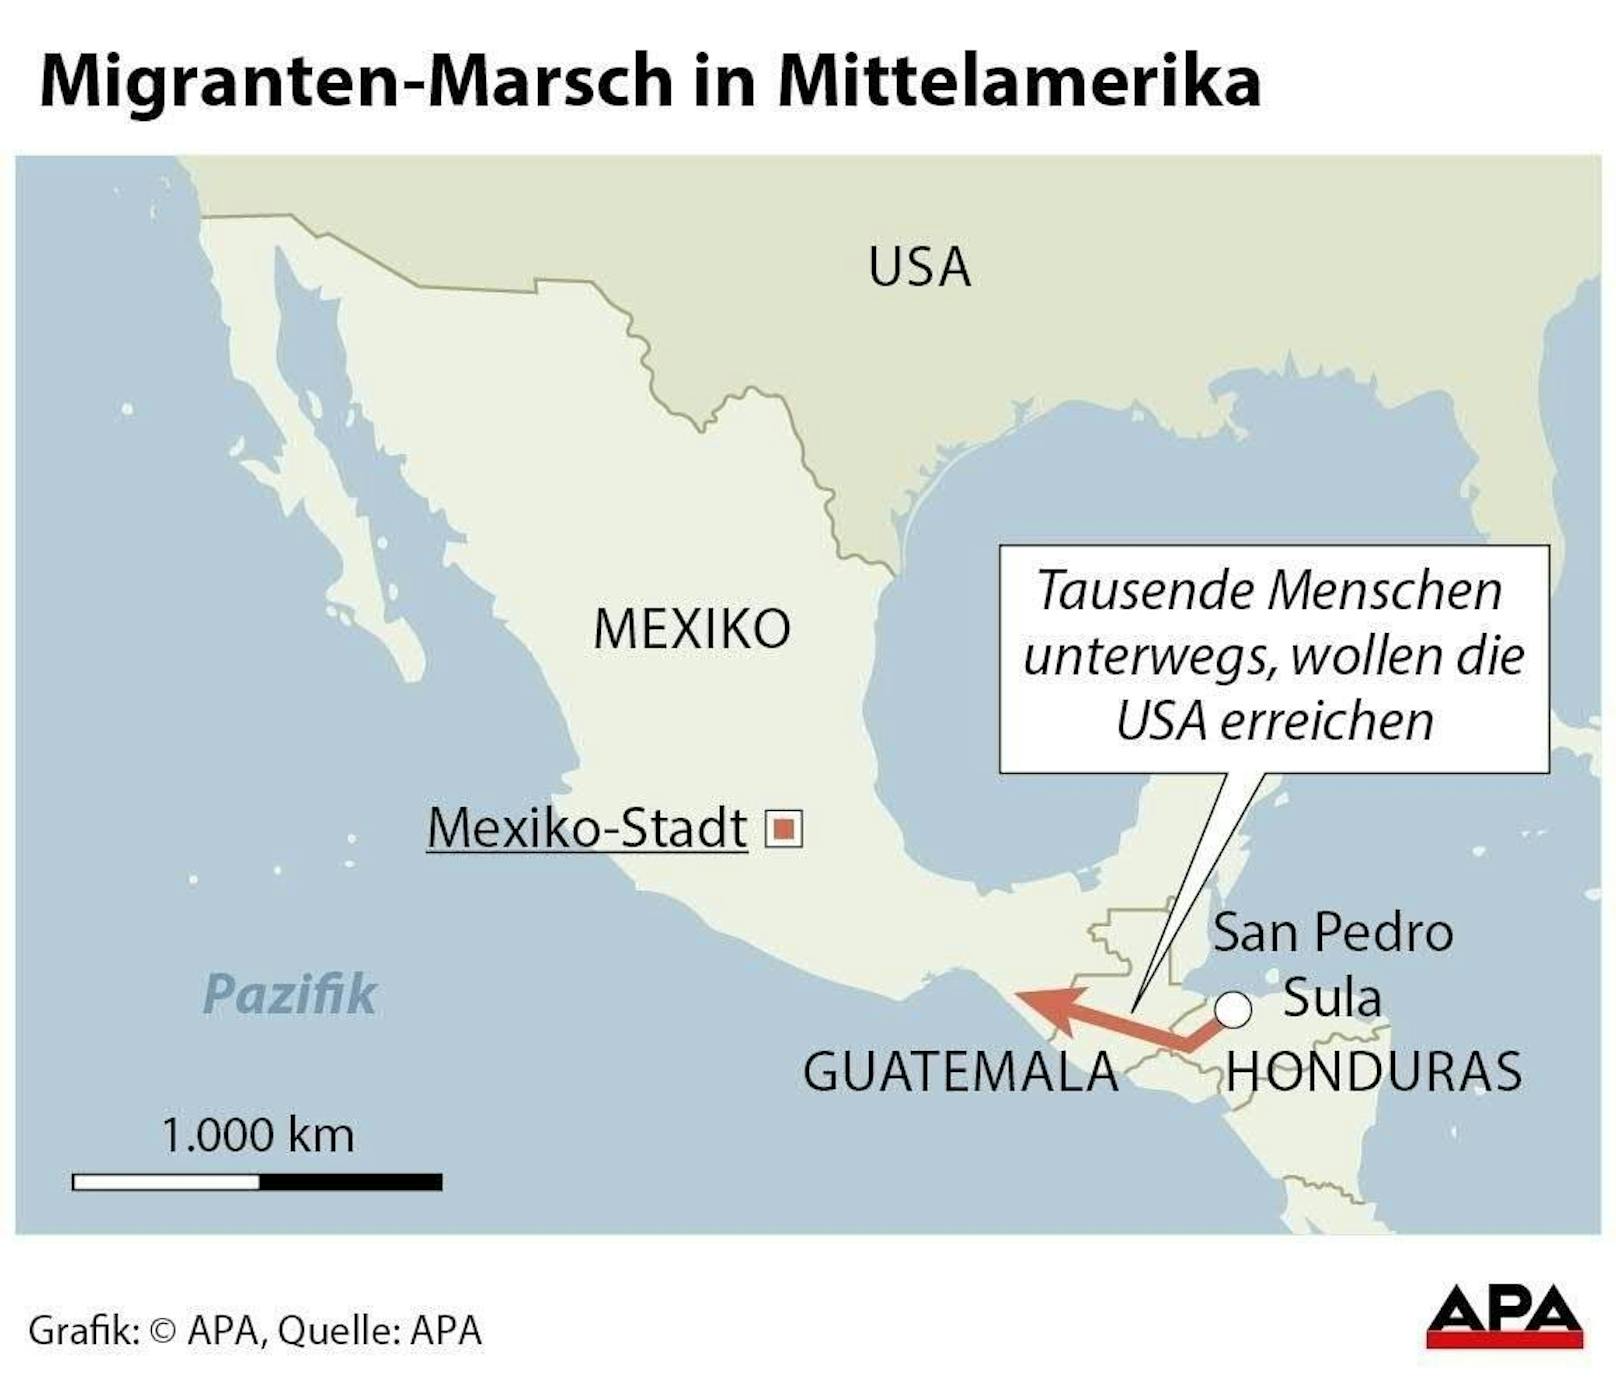 Tausende Menschen wollen die USA erreiche. Im Bild: Der Migranten-Marsch in Mittelamerika